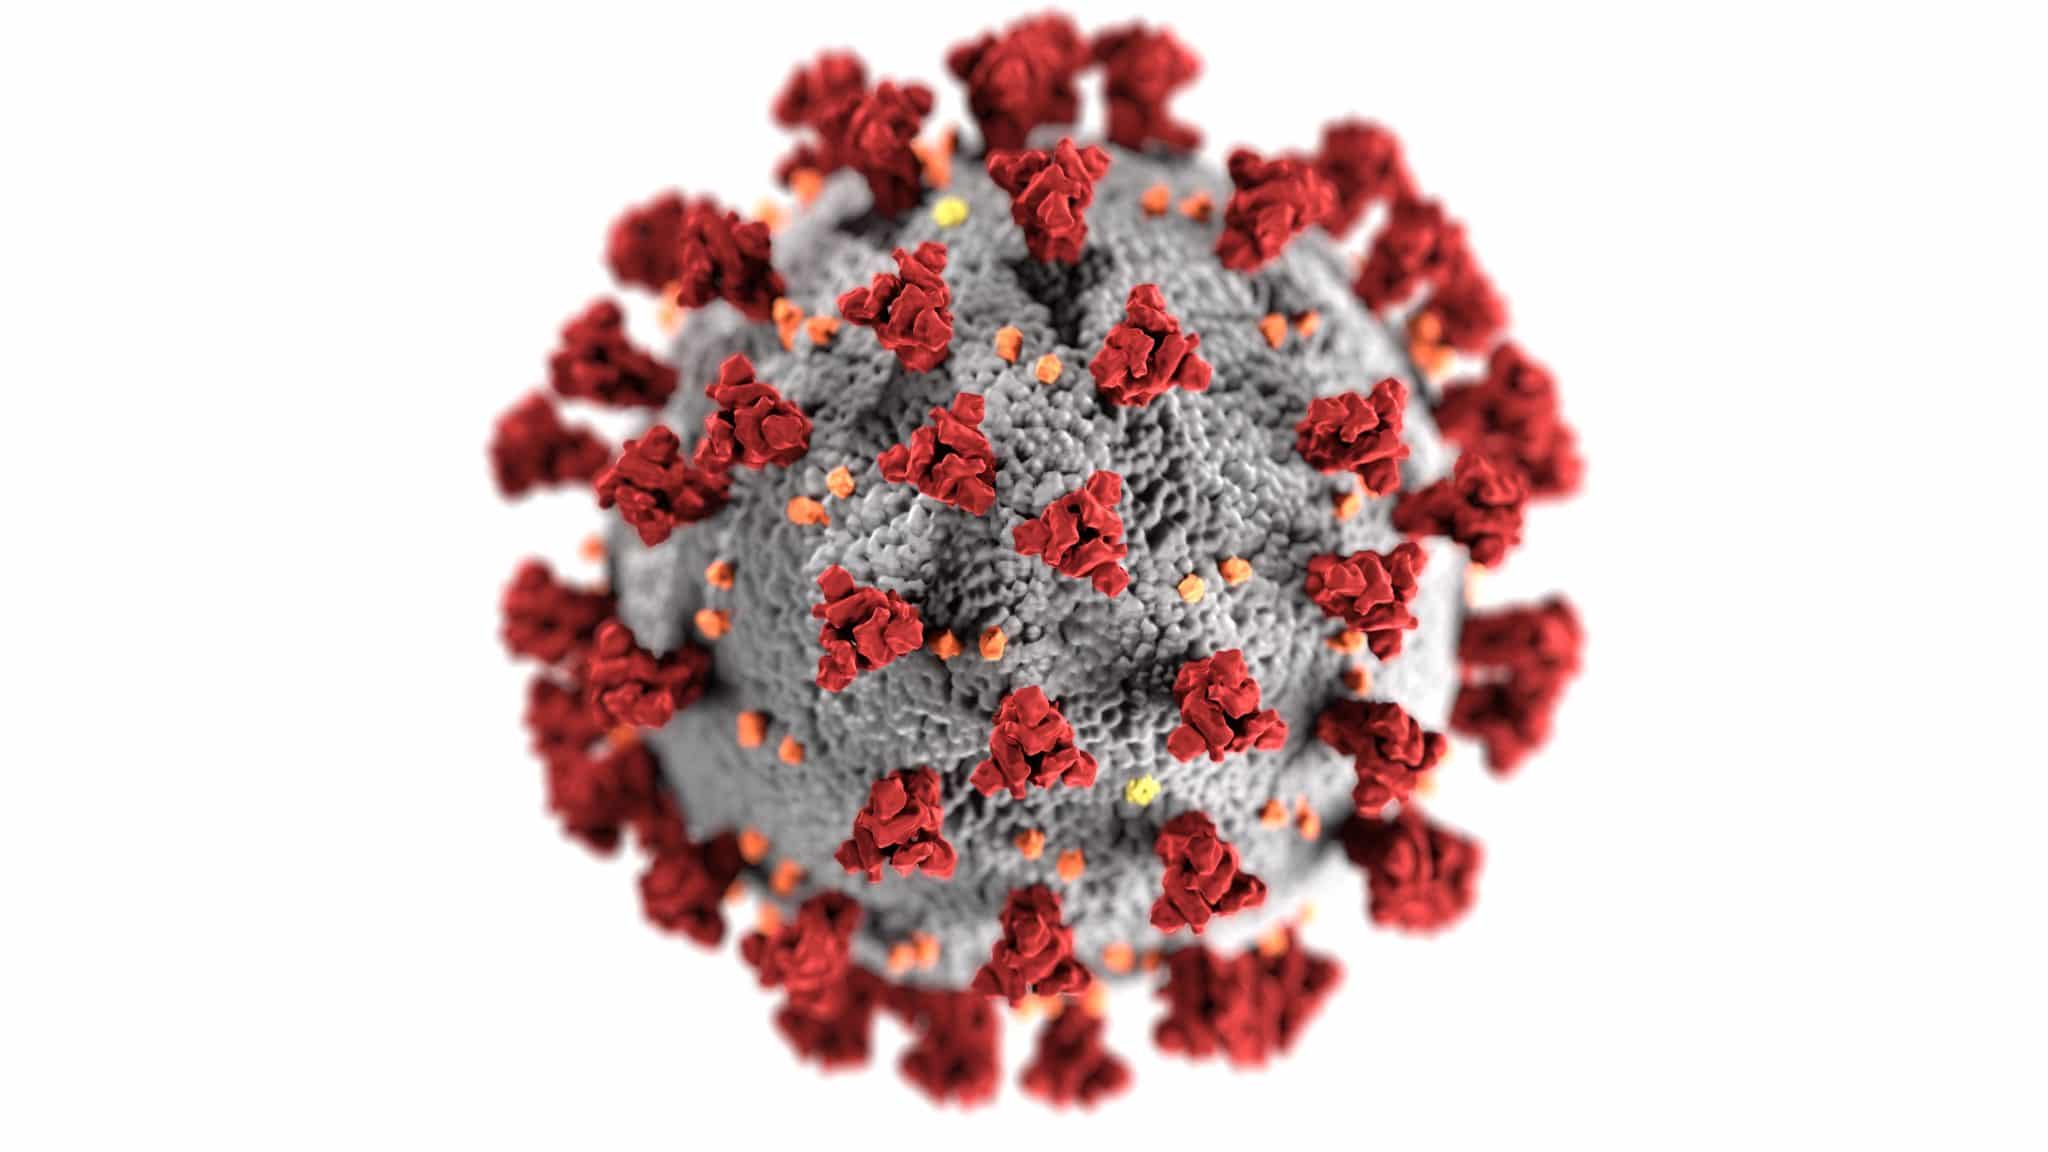 DIT EINDIGT NOOIT MEER: hoeveel doses vaccin zullen worden gepusht voor elke nieuwe coronavirusmutatie?